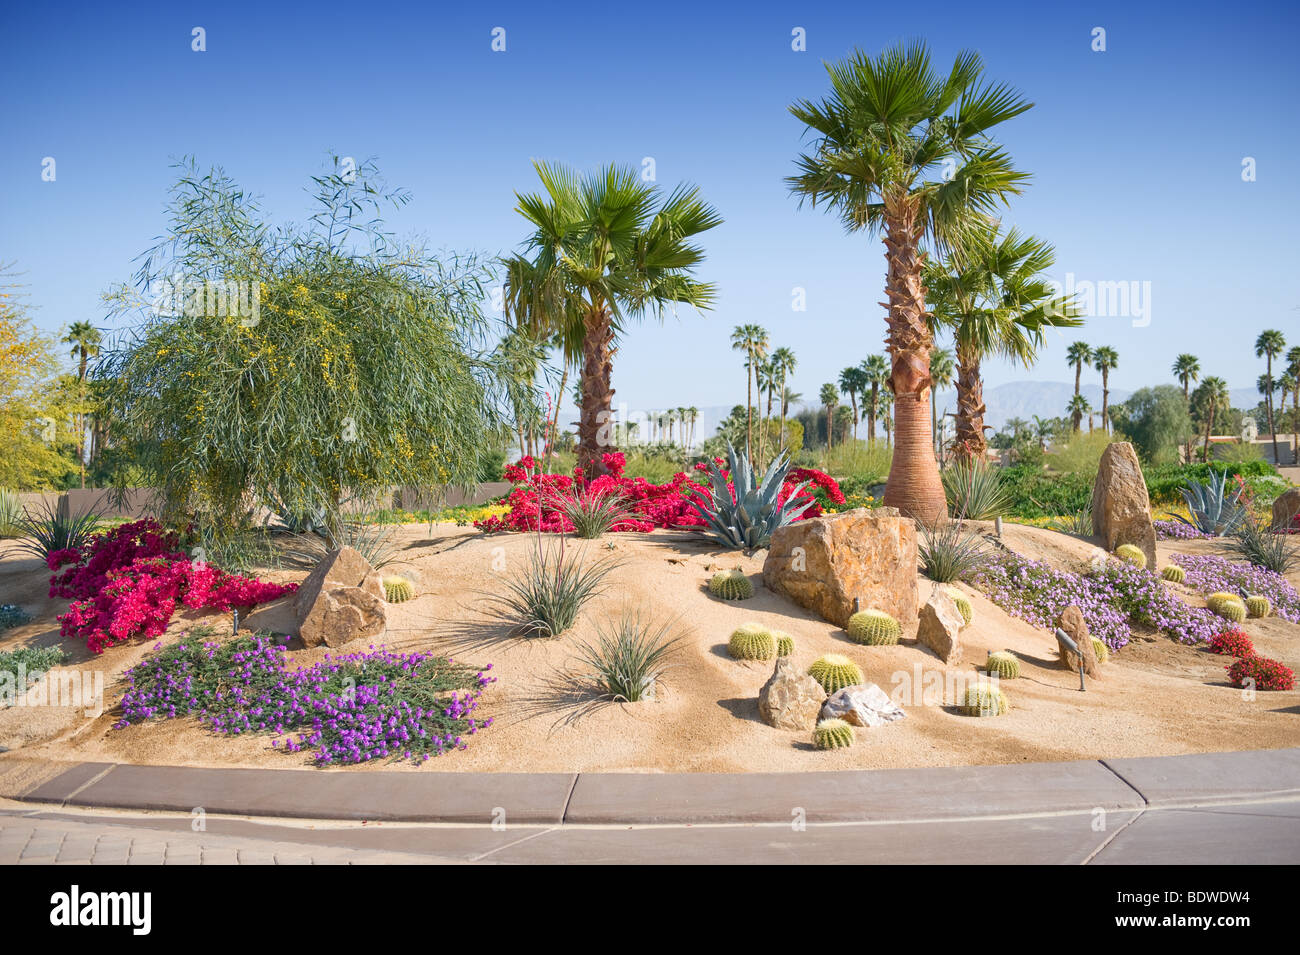 Terreno desértico mostrado con plantas y palmeras Foto de stock